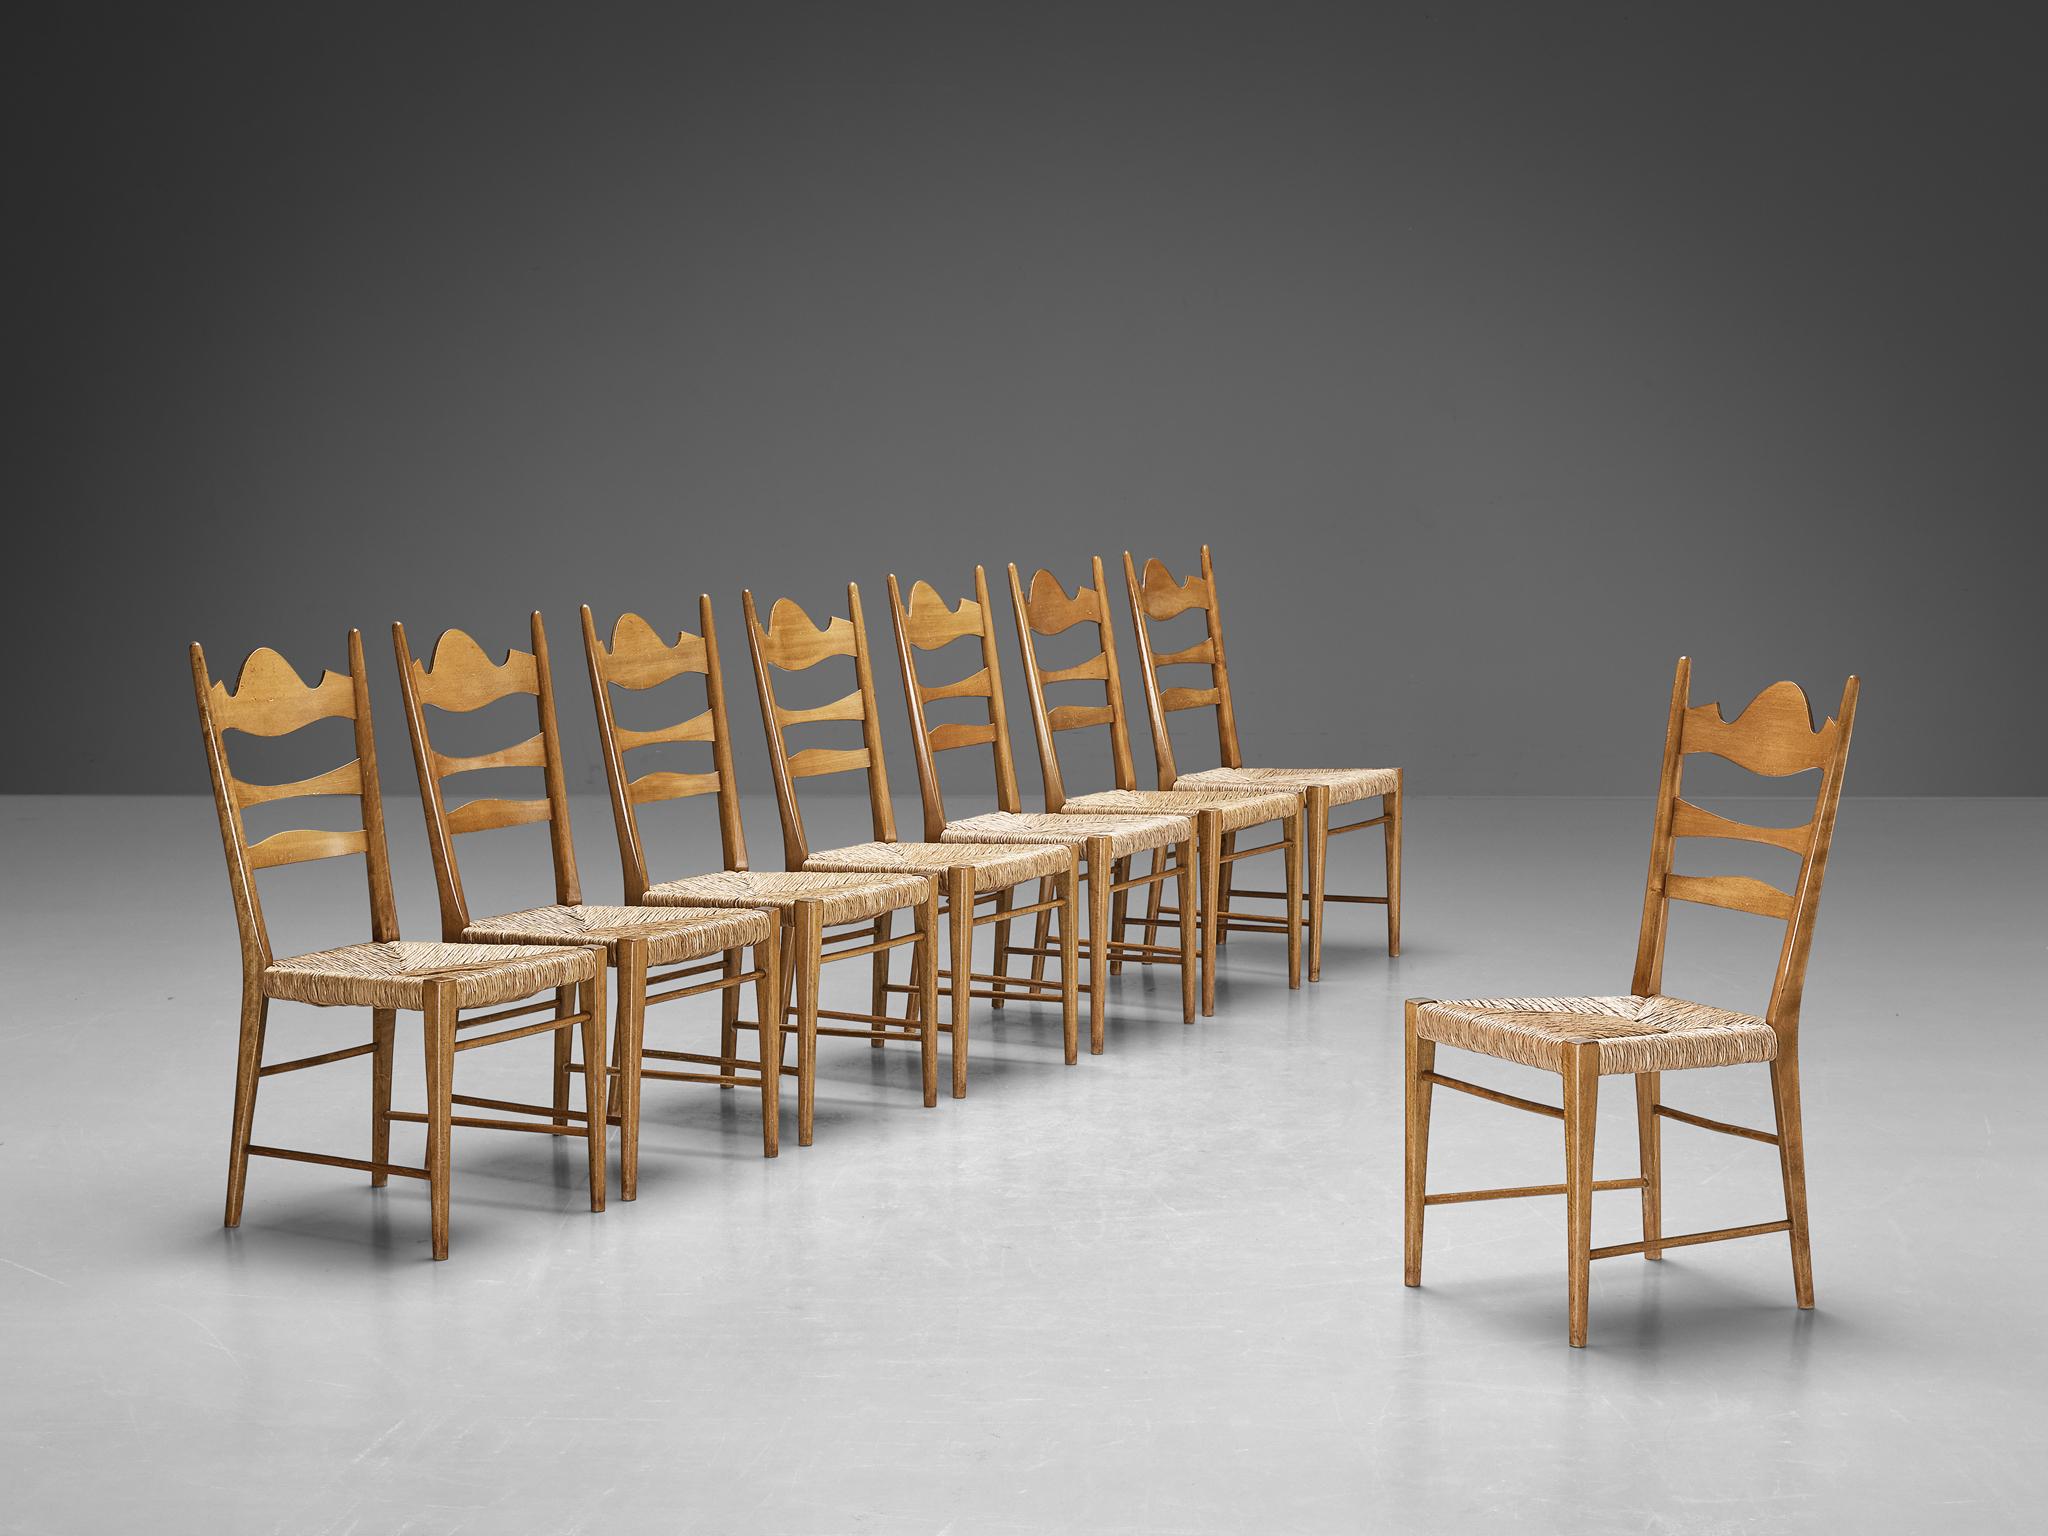 Satz von acht Esszimmerstühlen, Buche, Stroh, Italien, 1950er Jahre

Diese Stühle sind mit einem raffinierten dekorativen Reiz und einer rustikalen Neigung gefertigt. Sie zeichnen sich durch exquisite Handwerkskunst und komplizierte